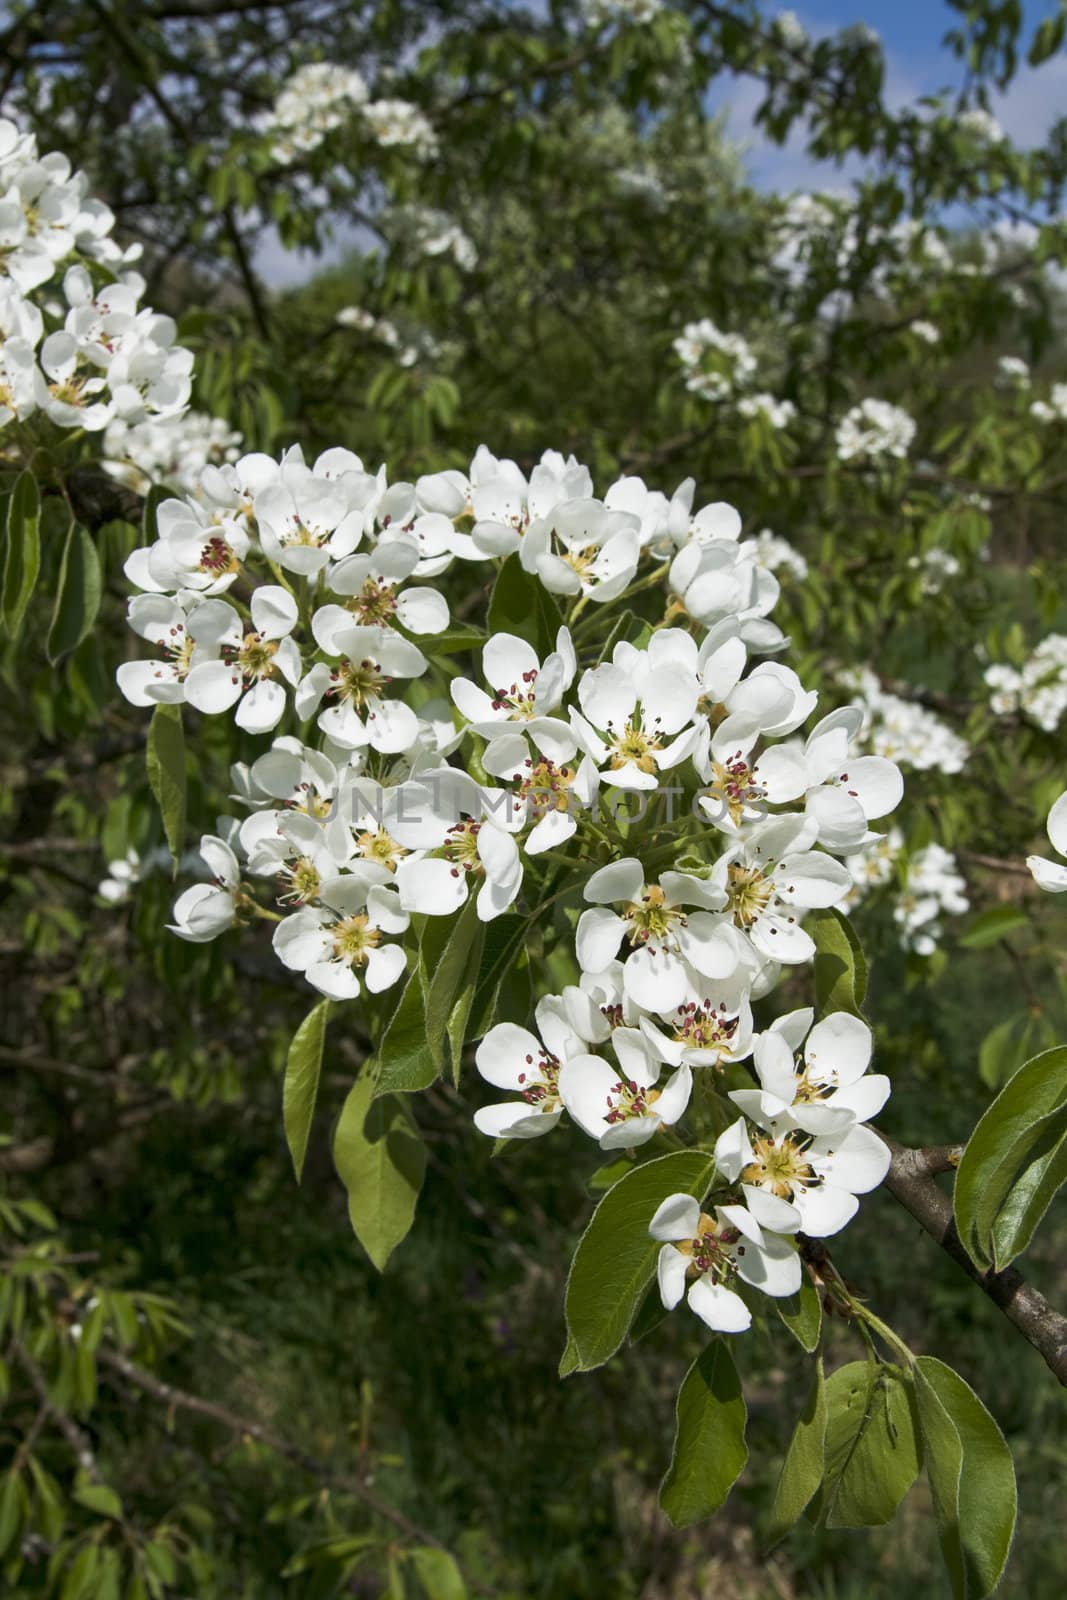 Blooming peach flowers in spring